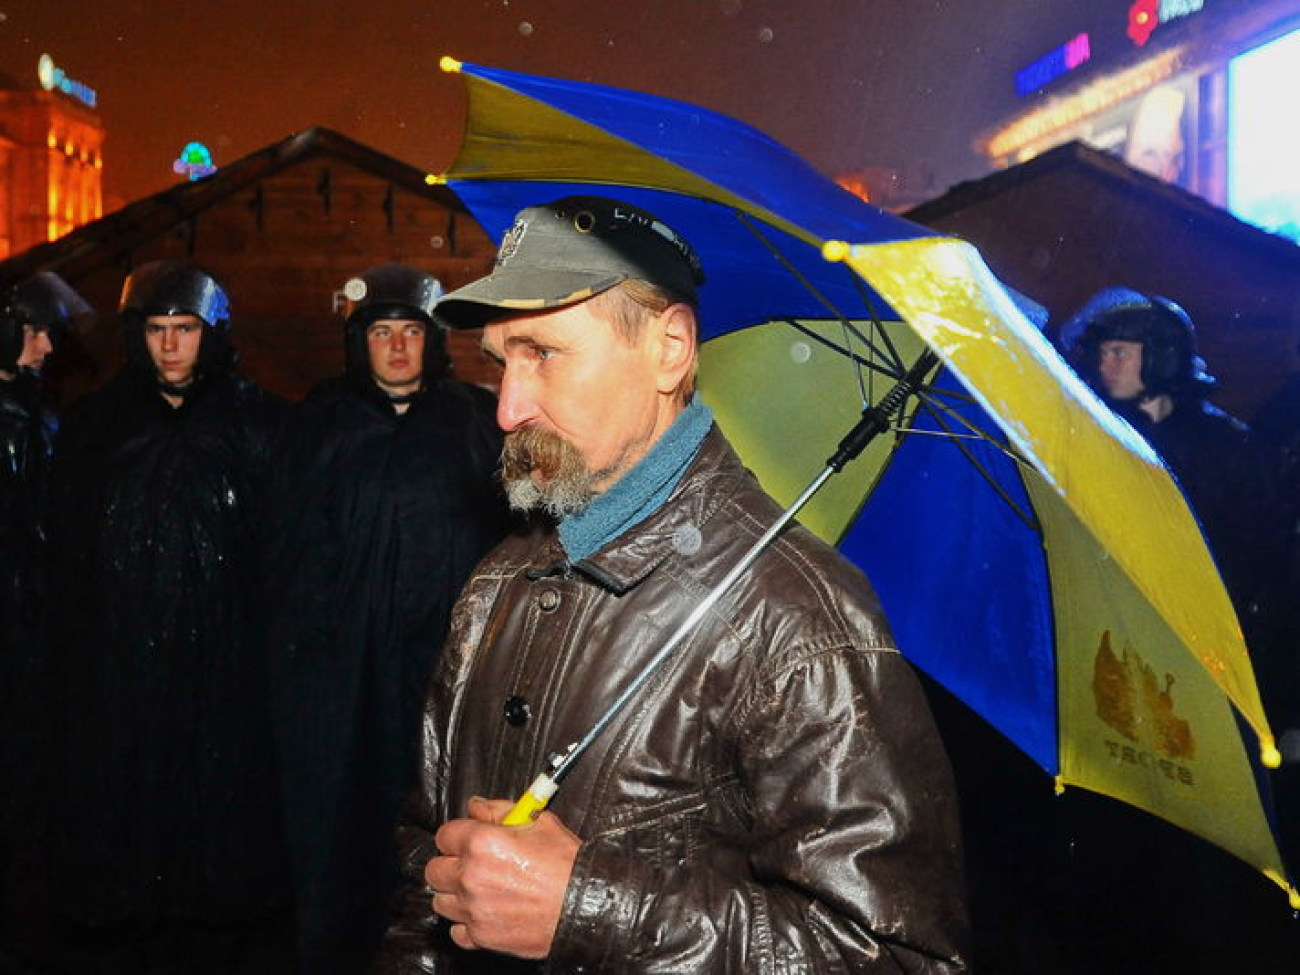 Вечерний Евро-Майдан: люди под дождем и политики с листовками, 22 ноября 2013г.